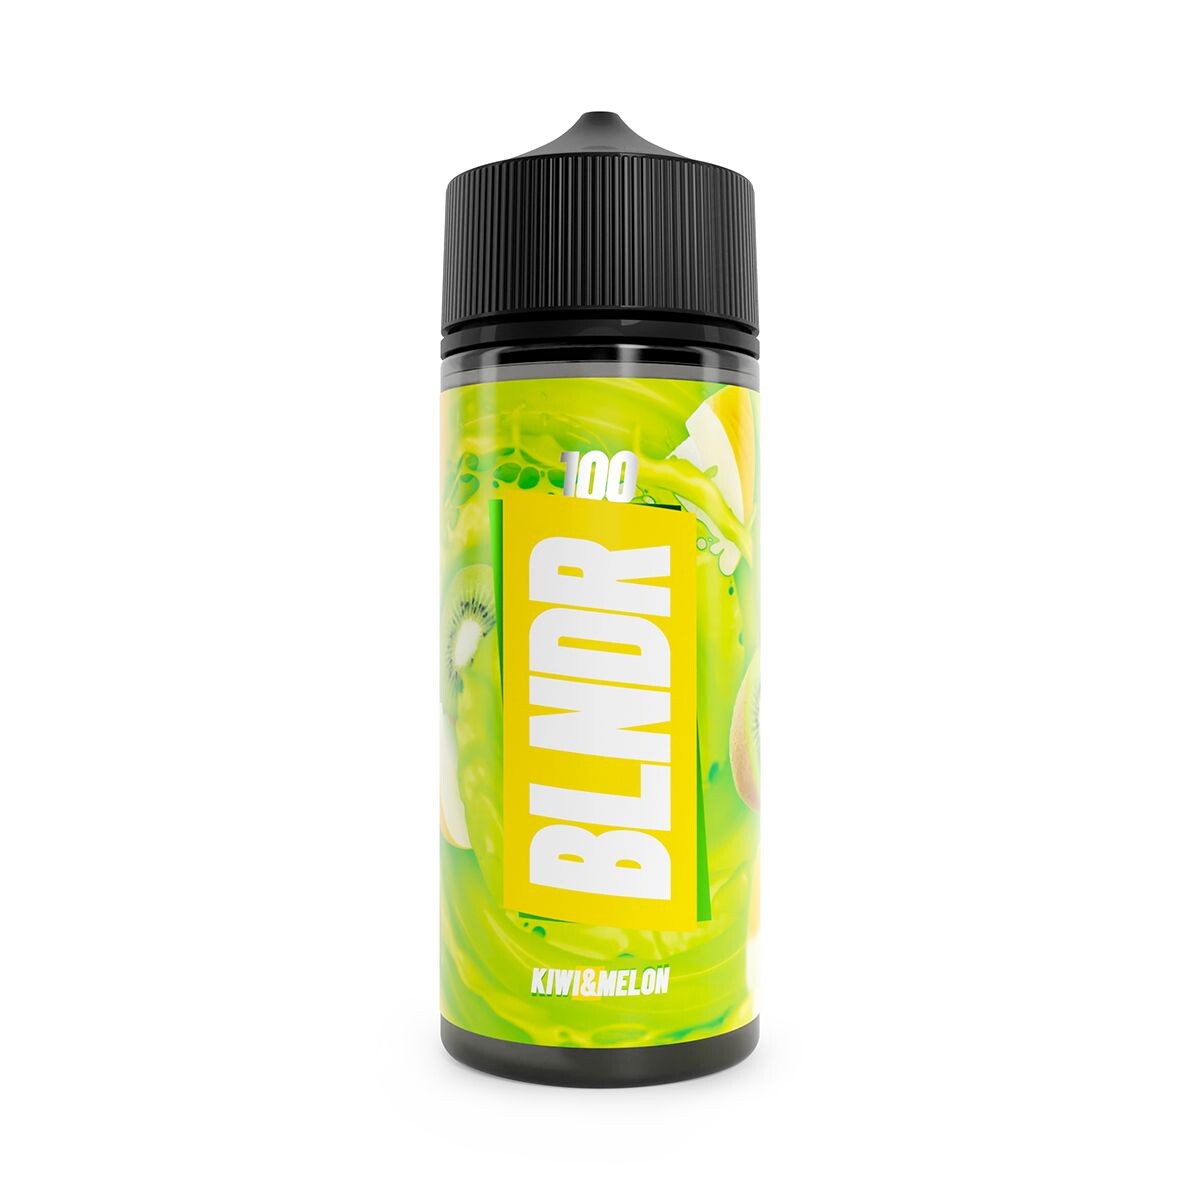 Blndr kiwi & melon 100ml shortfill e-liquid available at dispergo vaping uk